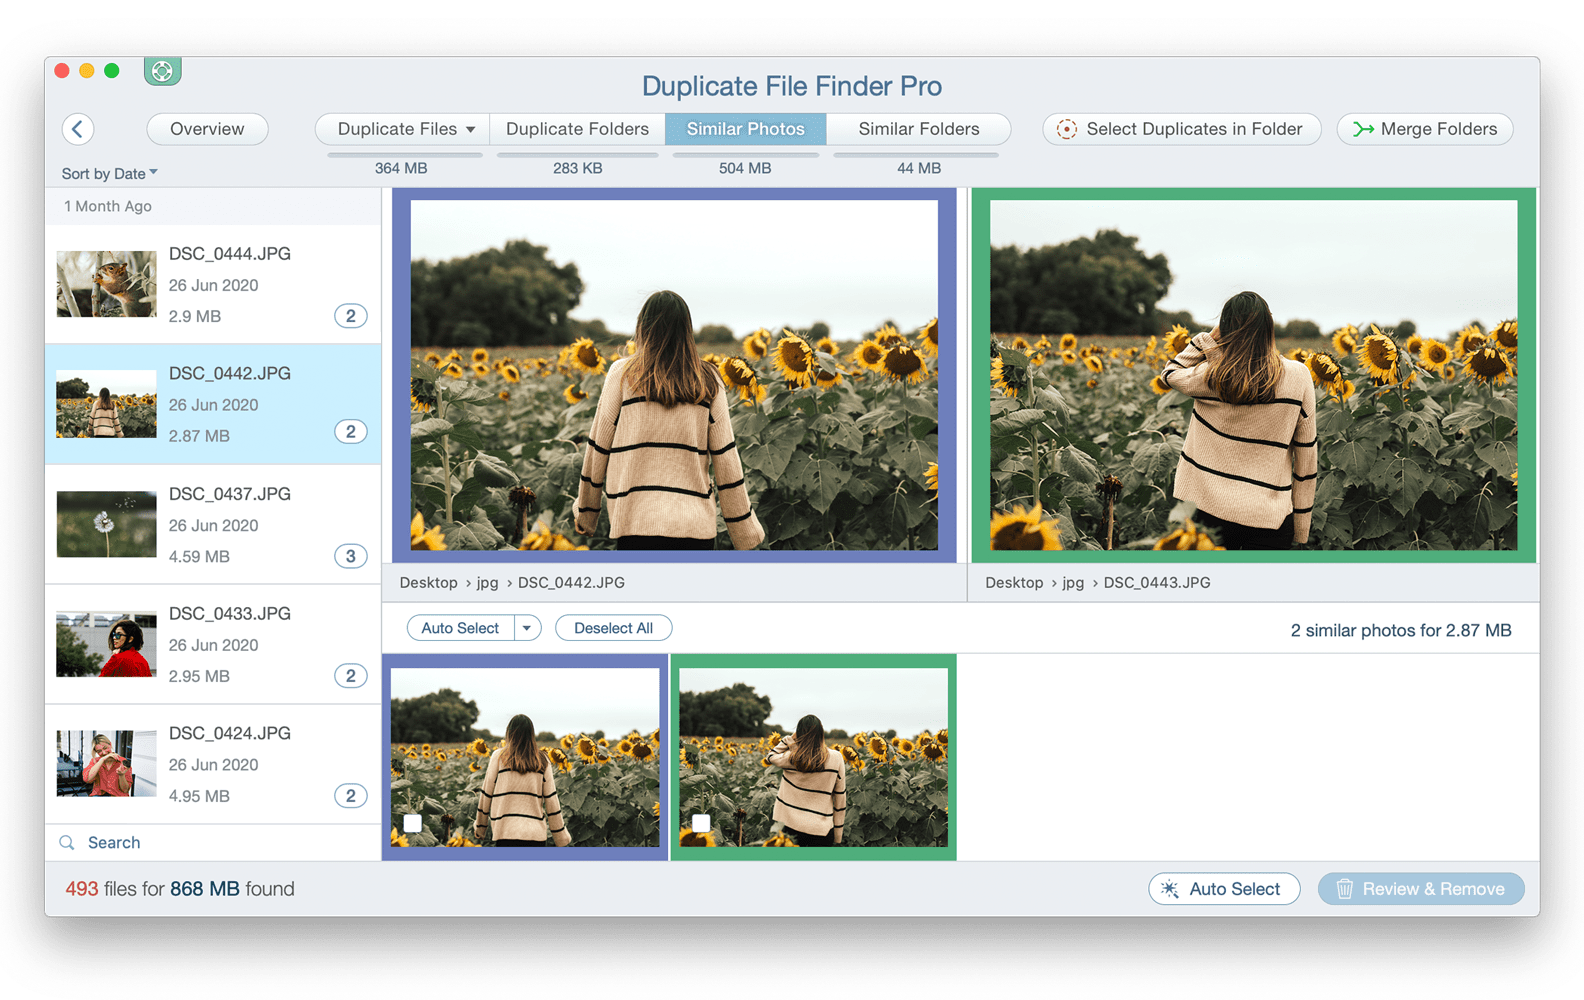 Duplicate File Finder showing Similar Photos tab